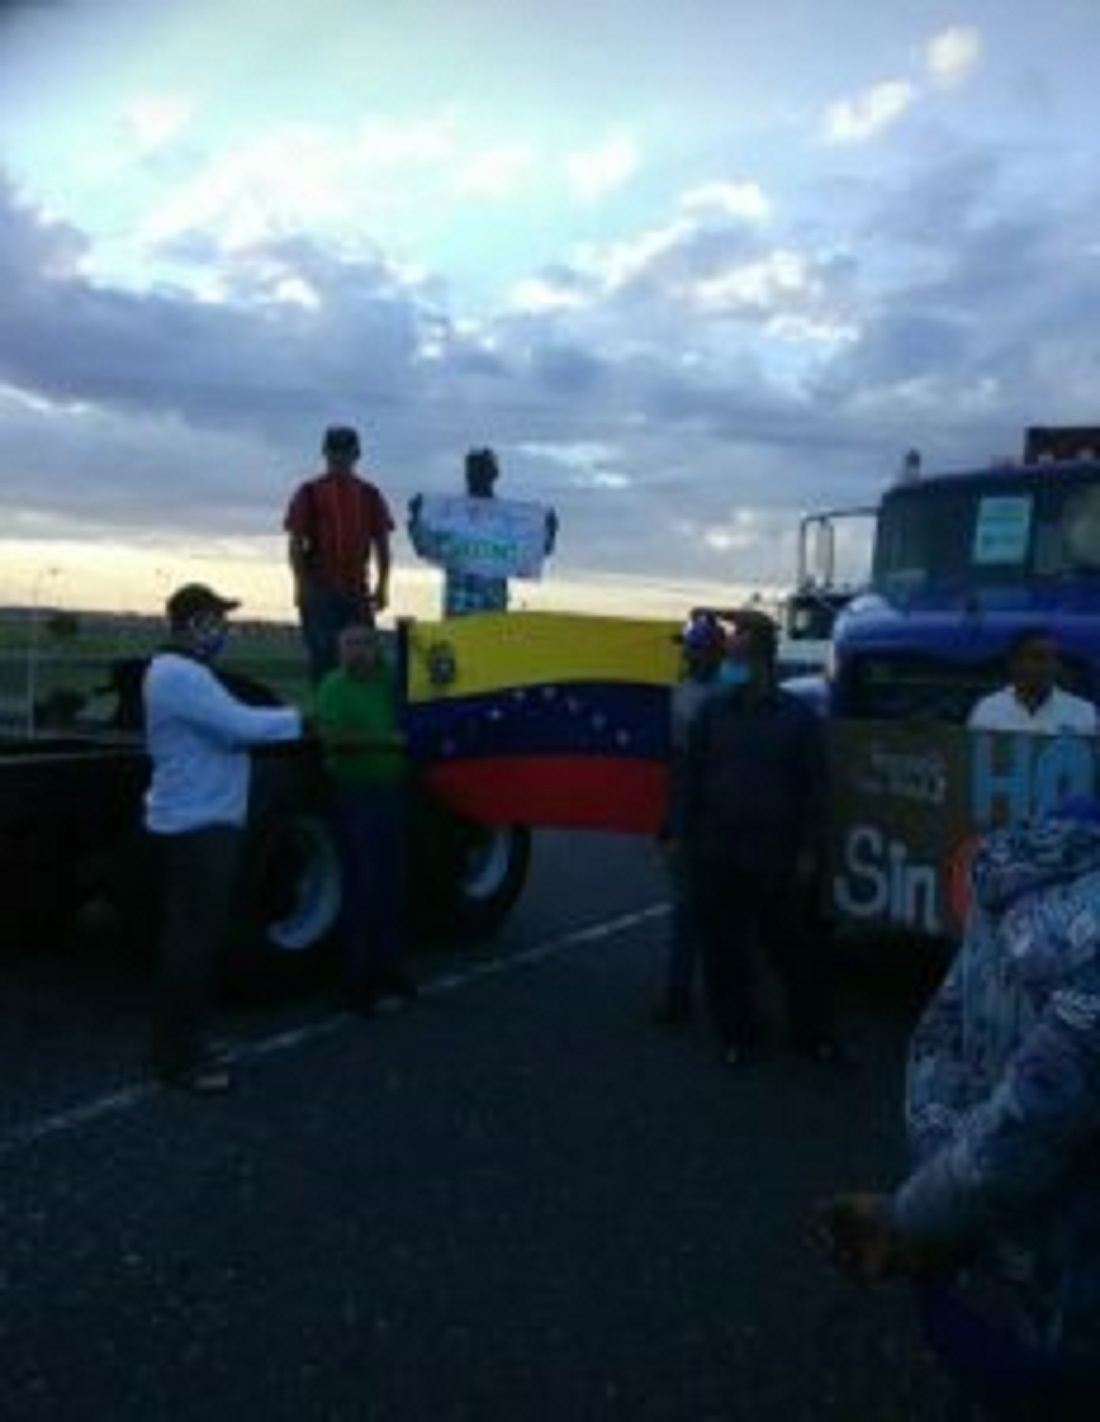 Transportistas de Puerto Cabello protestaron - Transportistas de Puerto Cabello protestaron